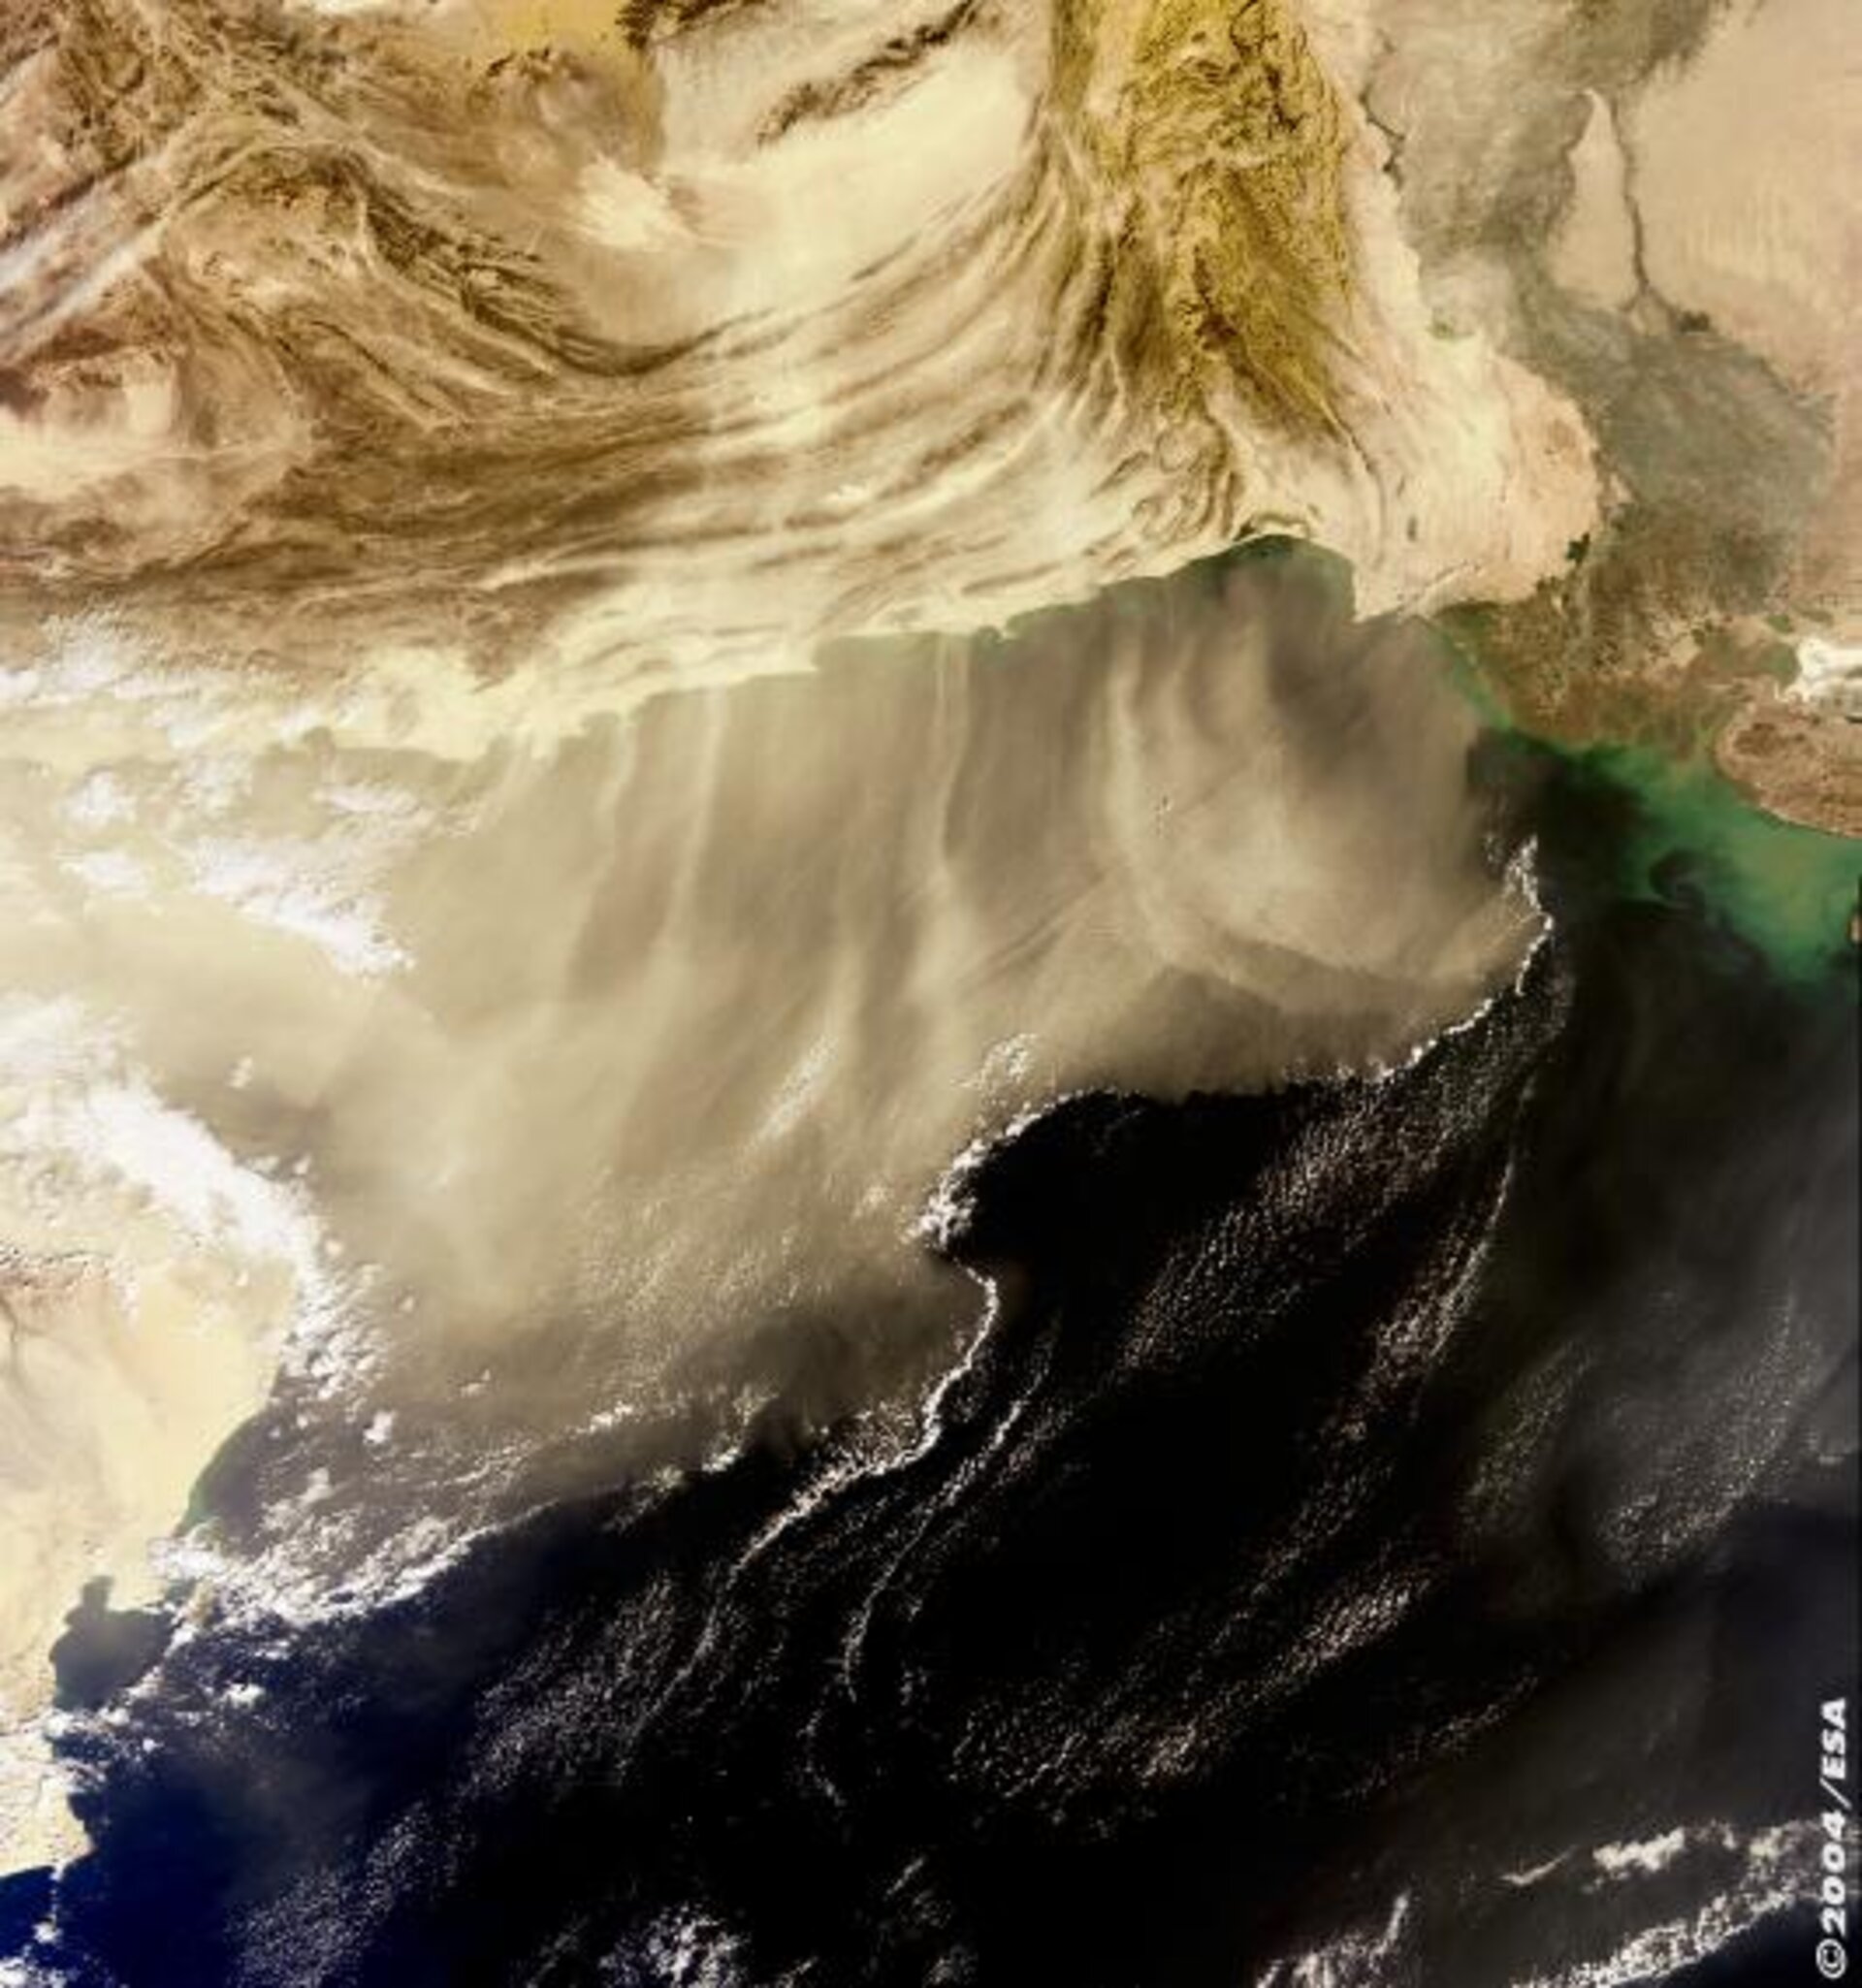 Dust storm in Pakistan as seen by Envisat